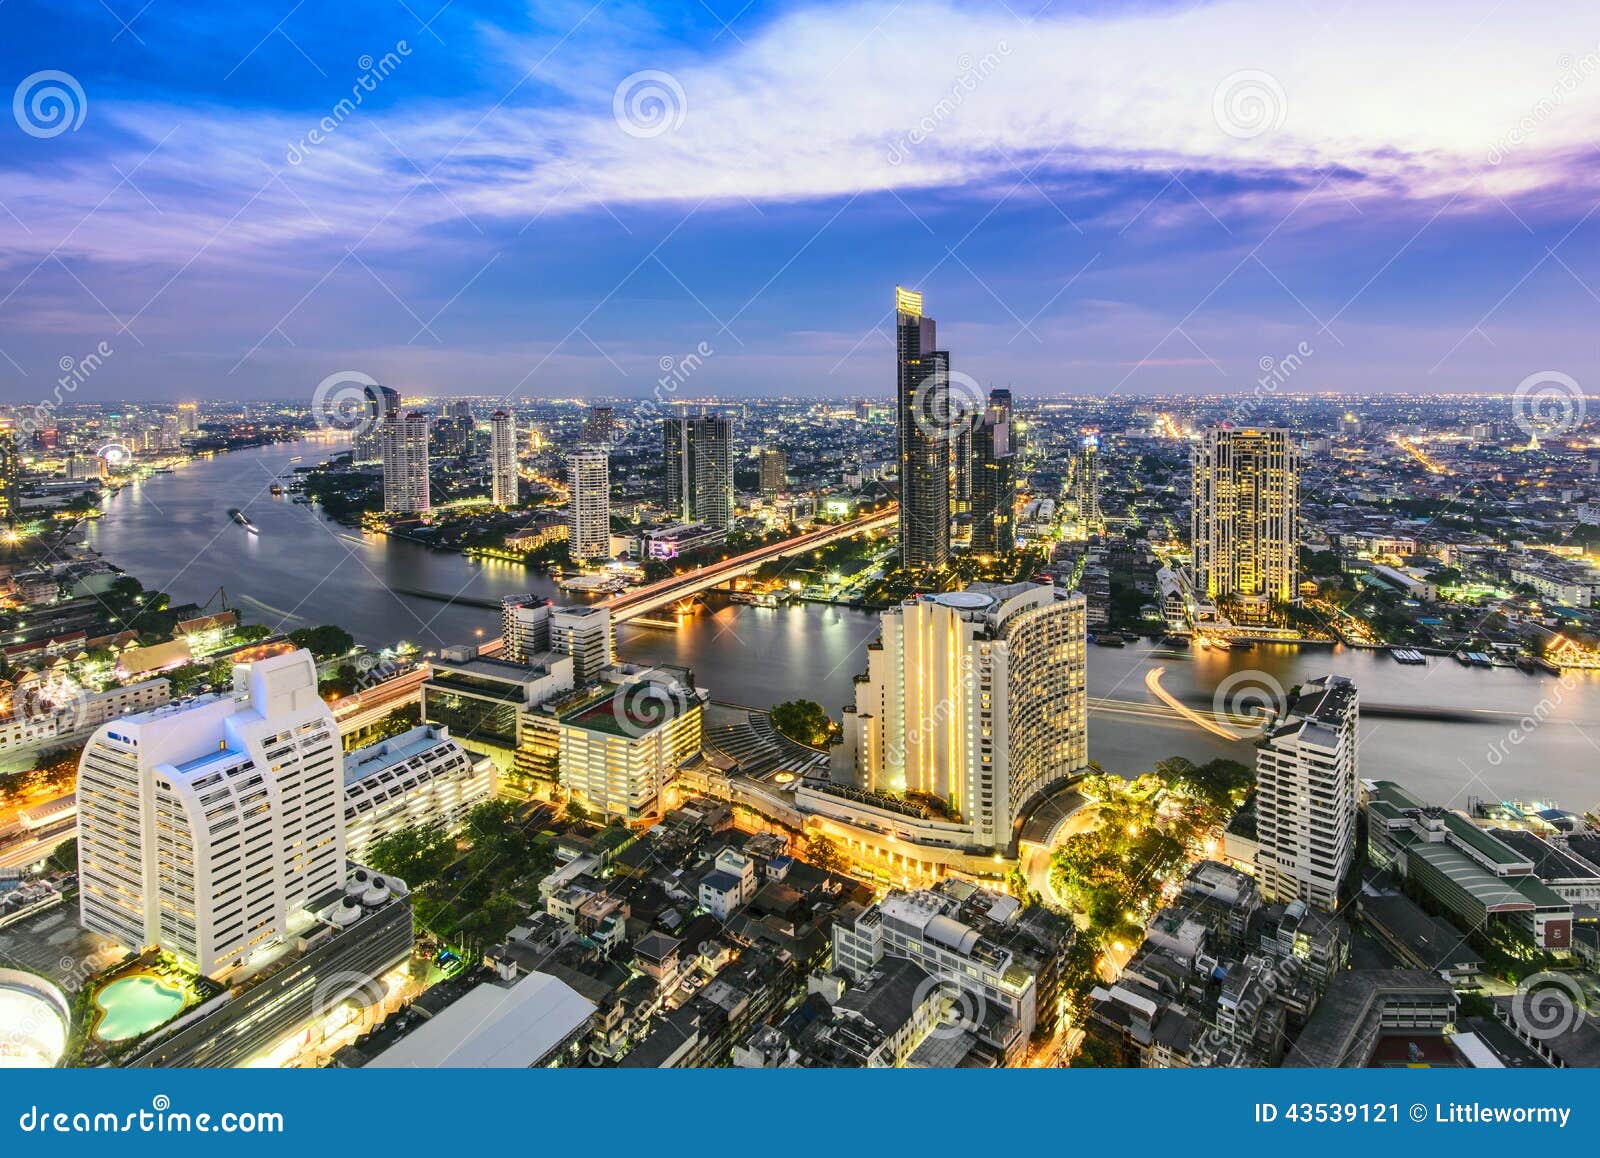 bangkok city and chao phraya river